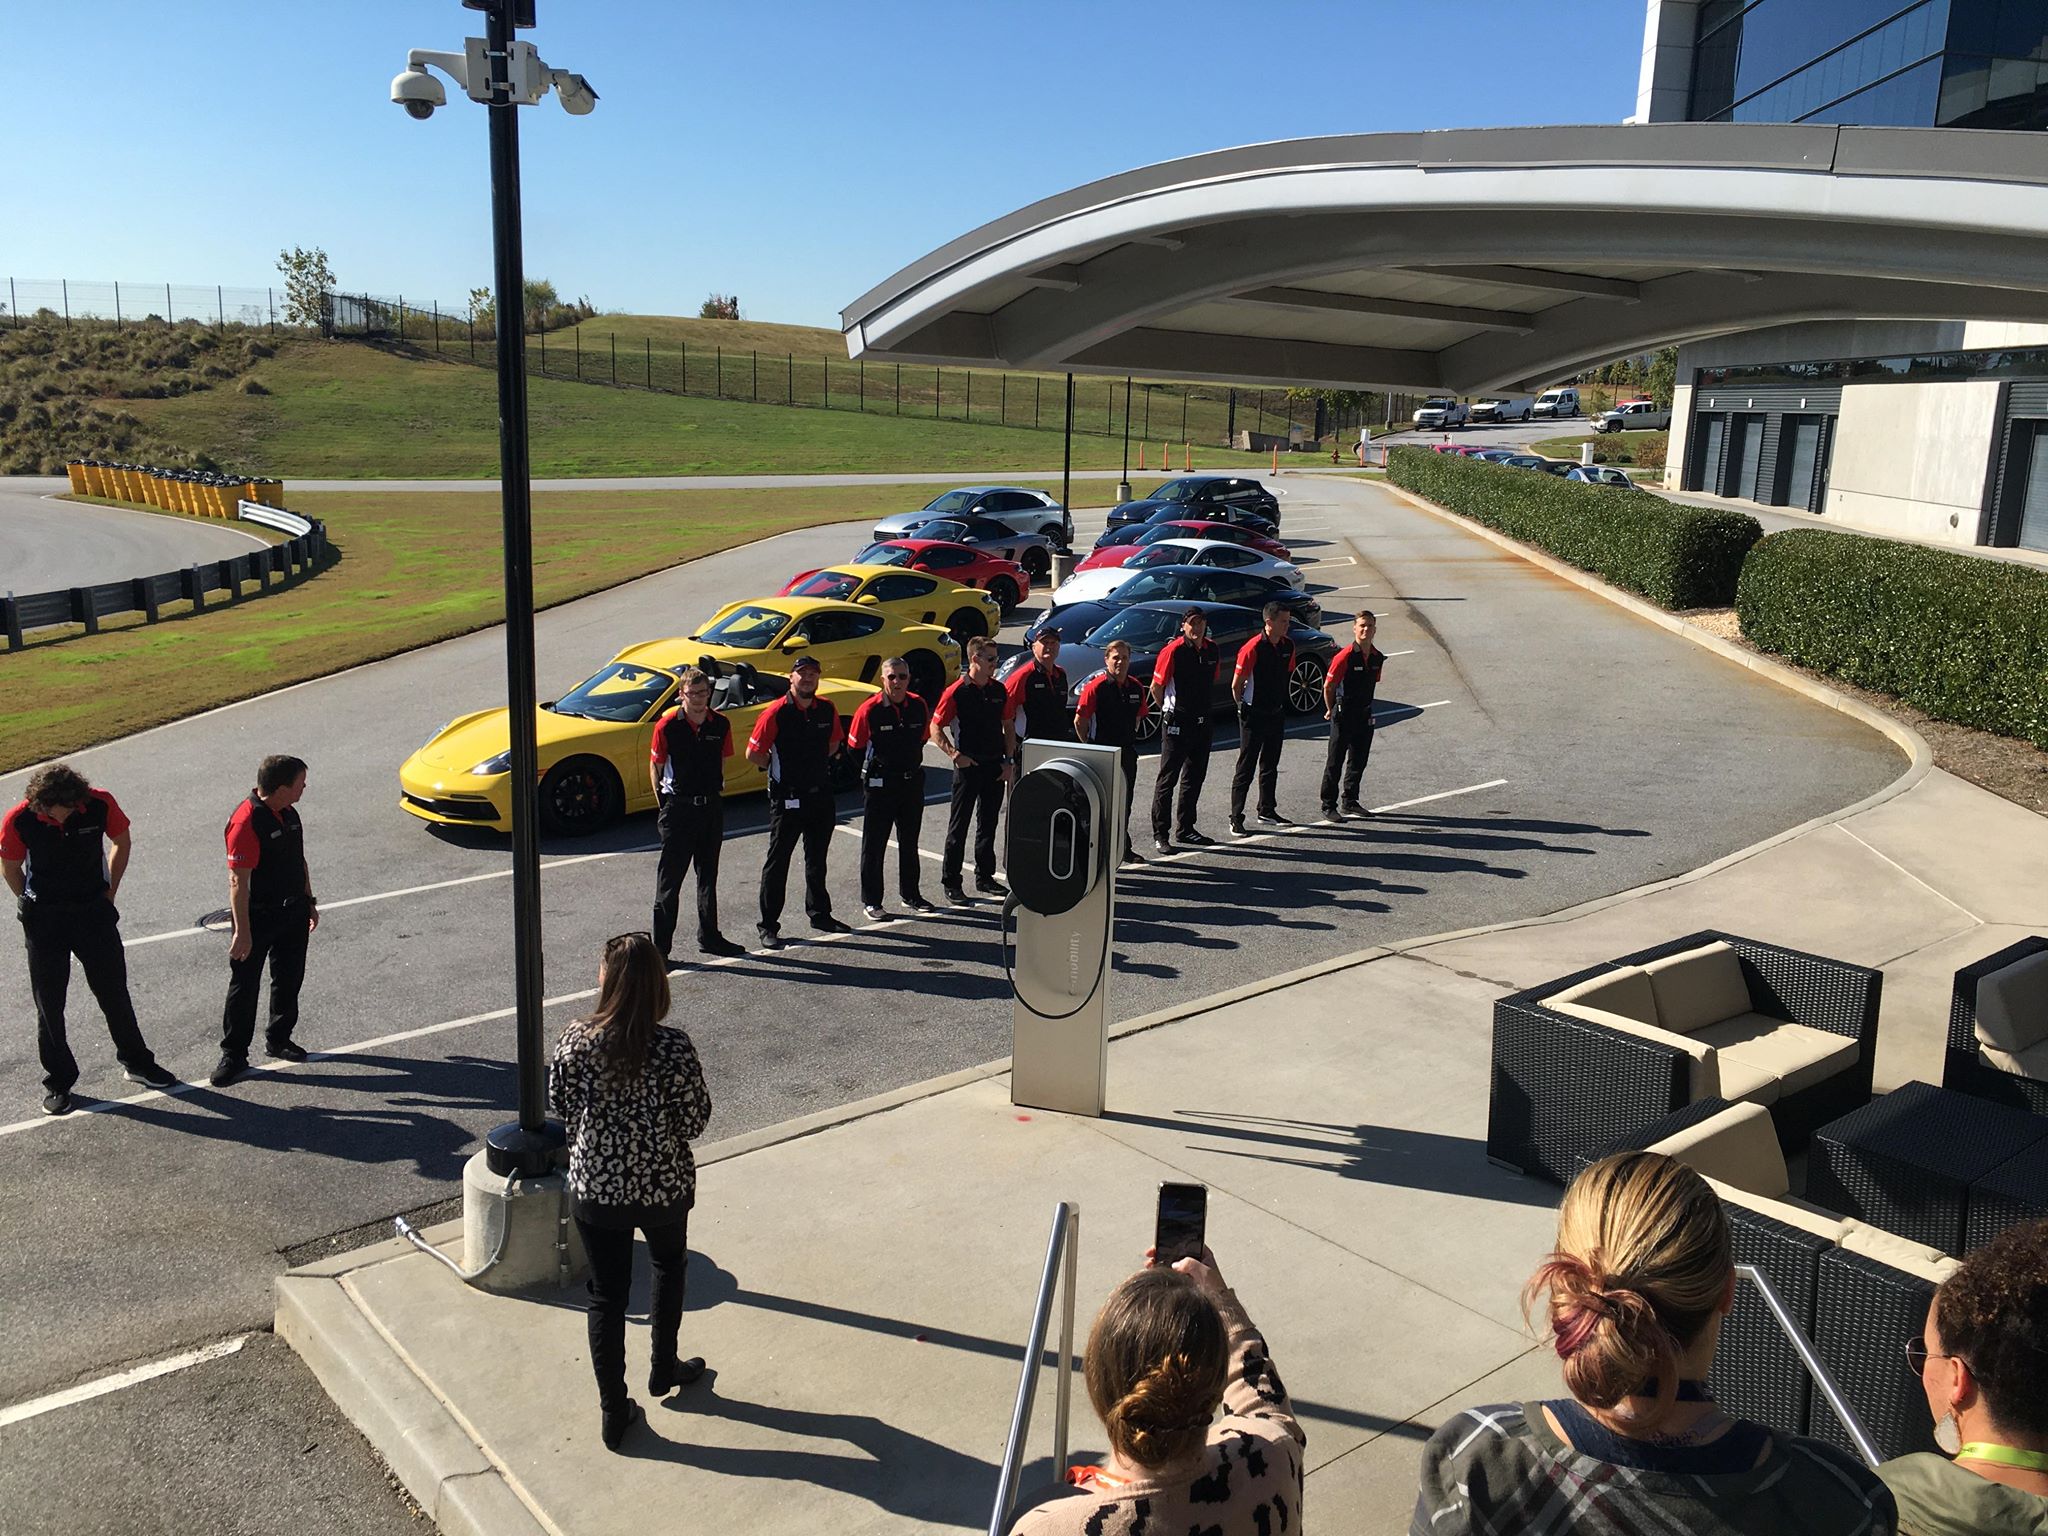 Porsche Experience Center in Atlanta